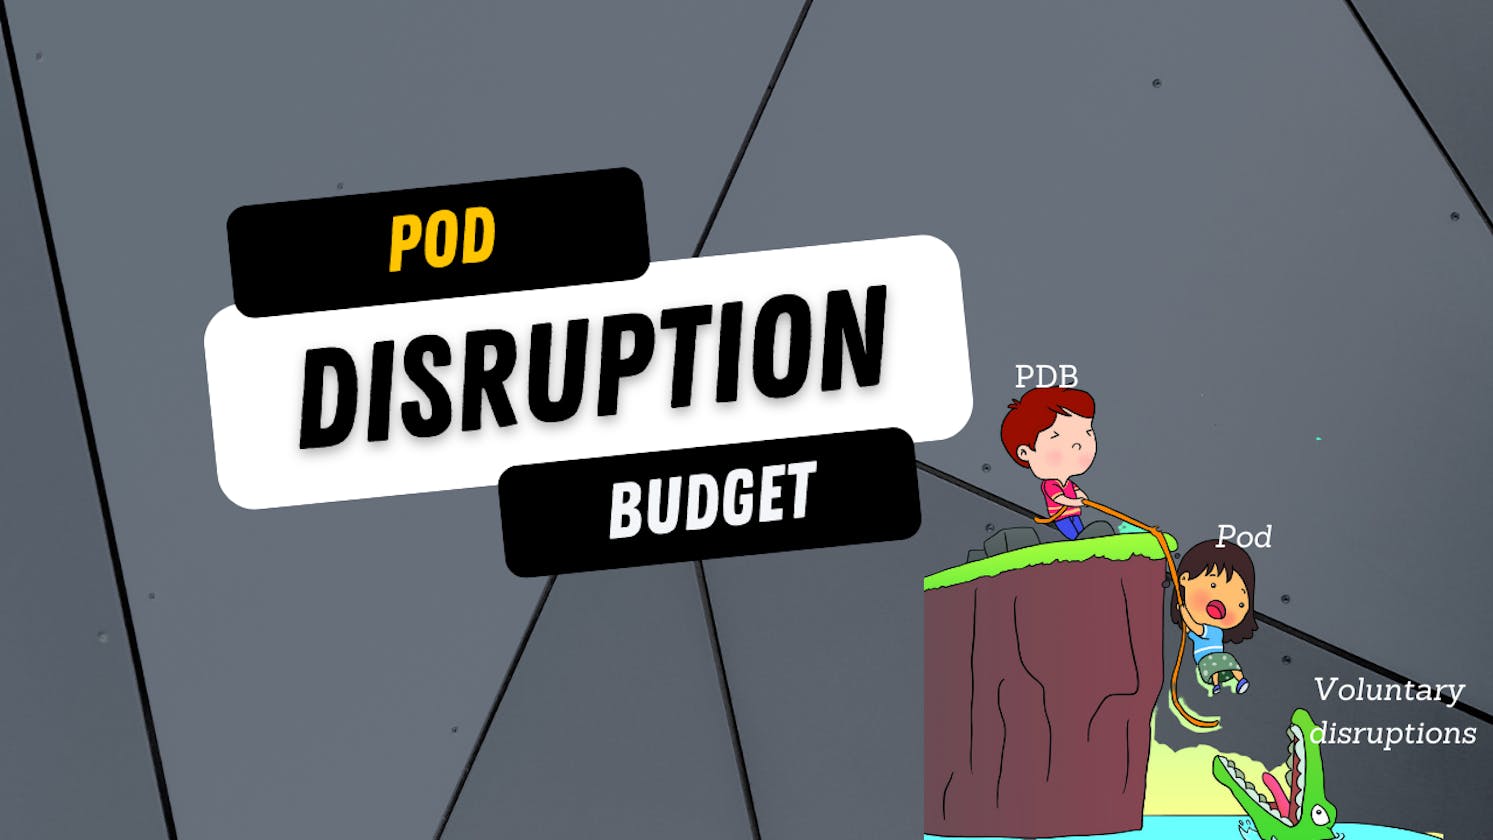 Pod Disruption Budget(Pdb)